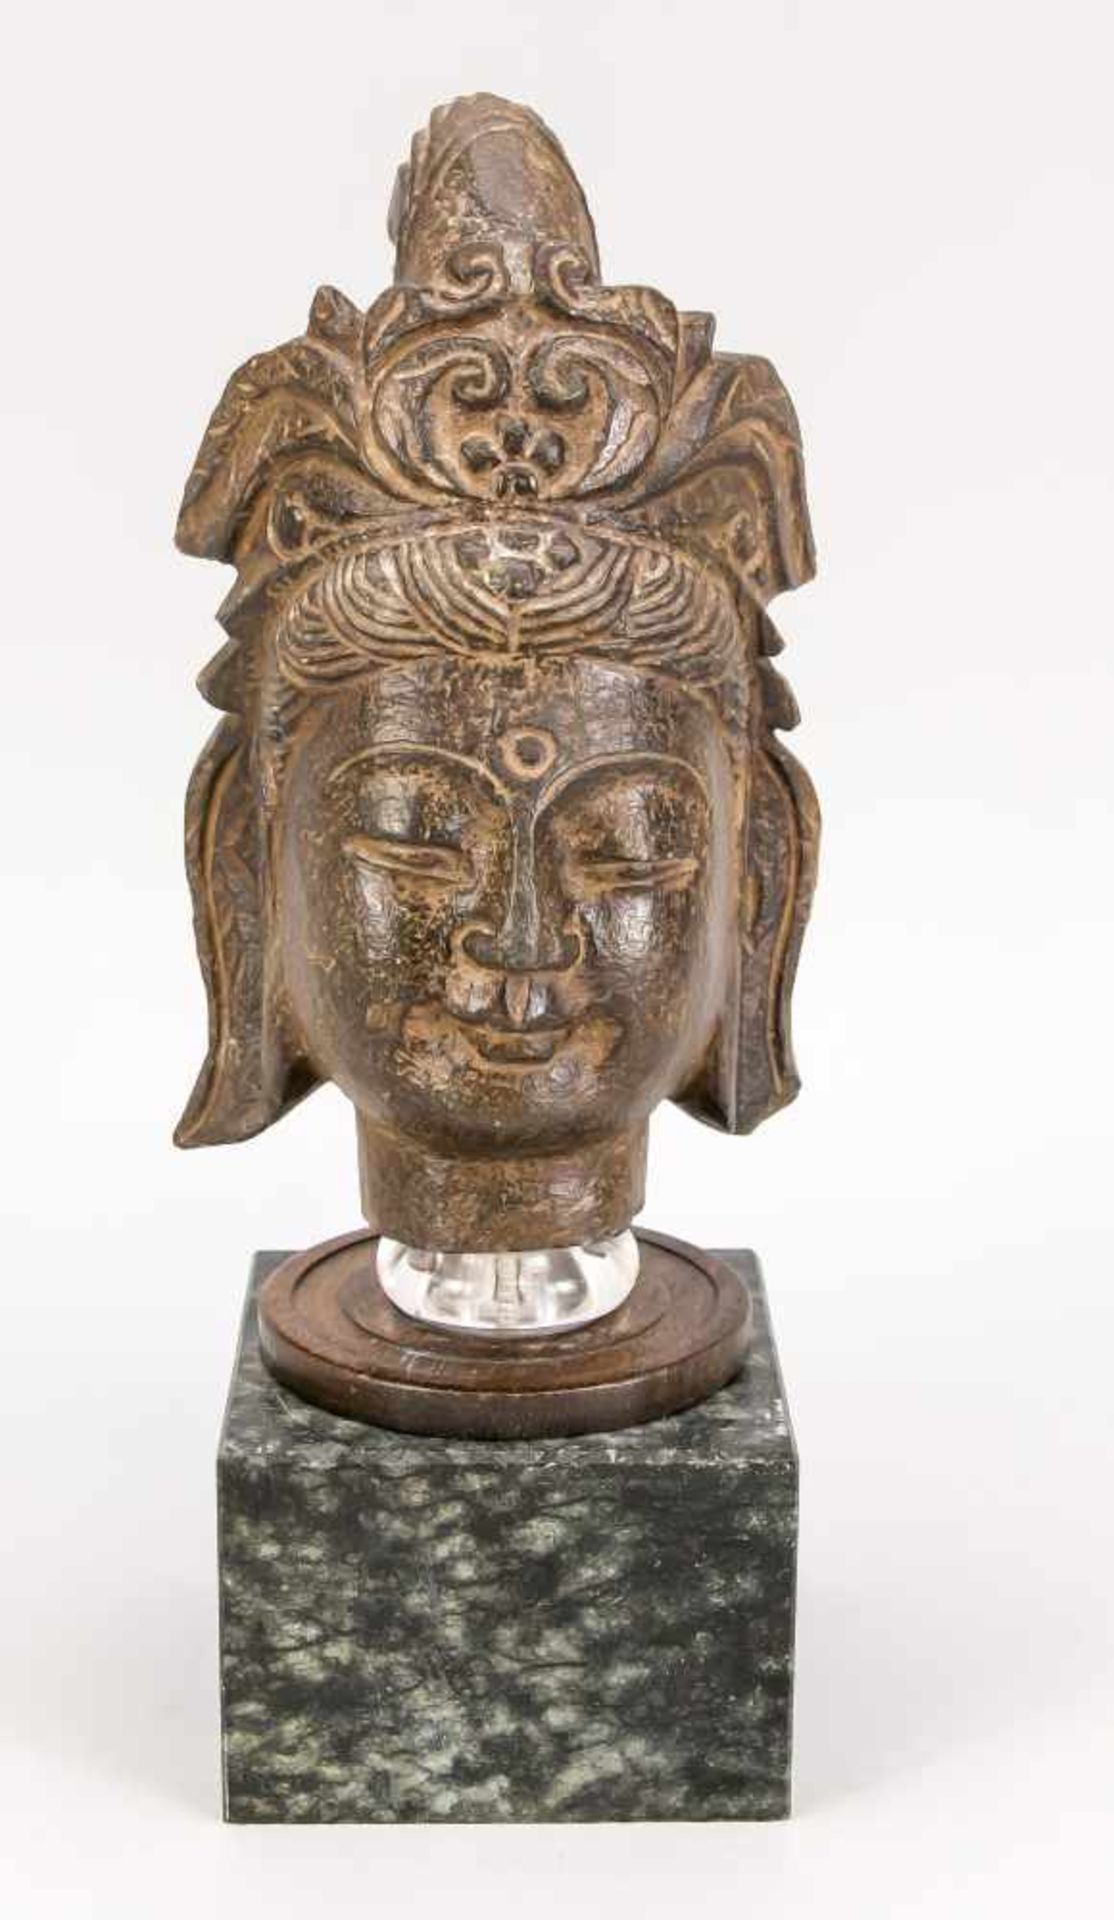 Kopf einer Guanyin, China, Alter unbekannt, Stein. Auf einen quadratischen, polierten